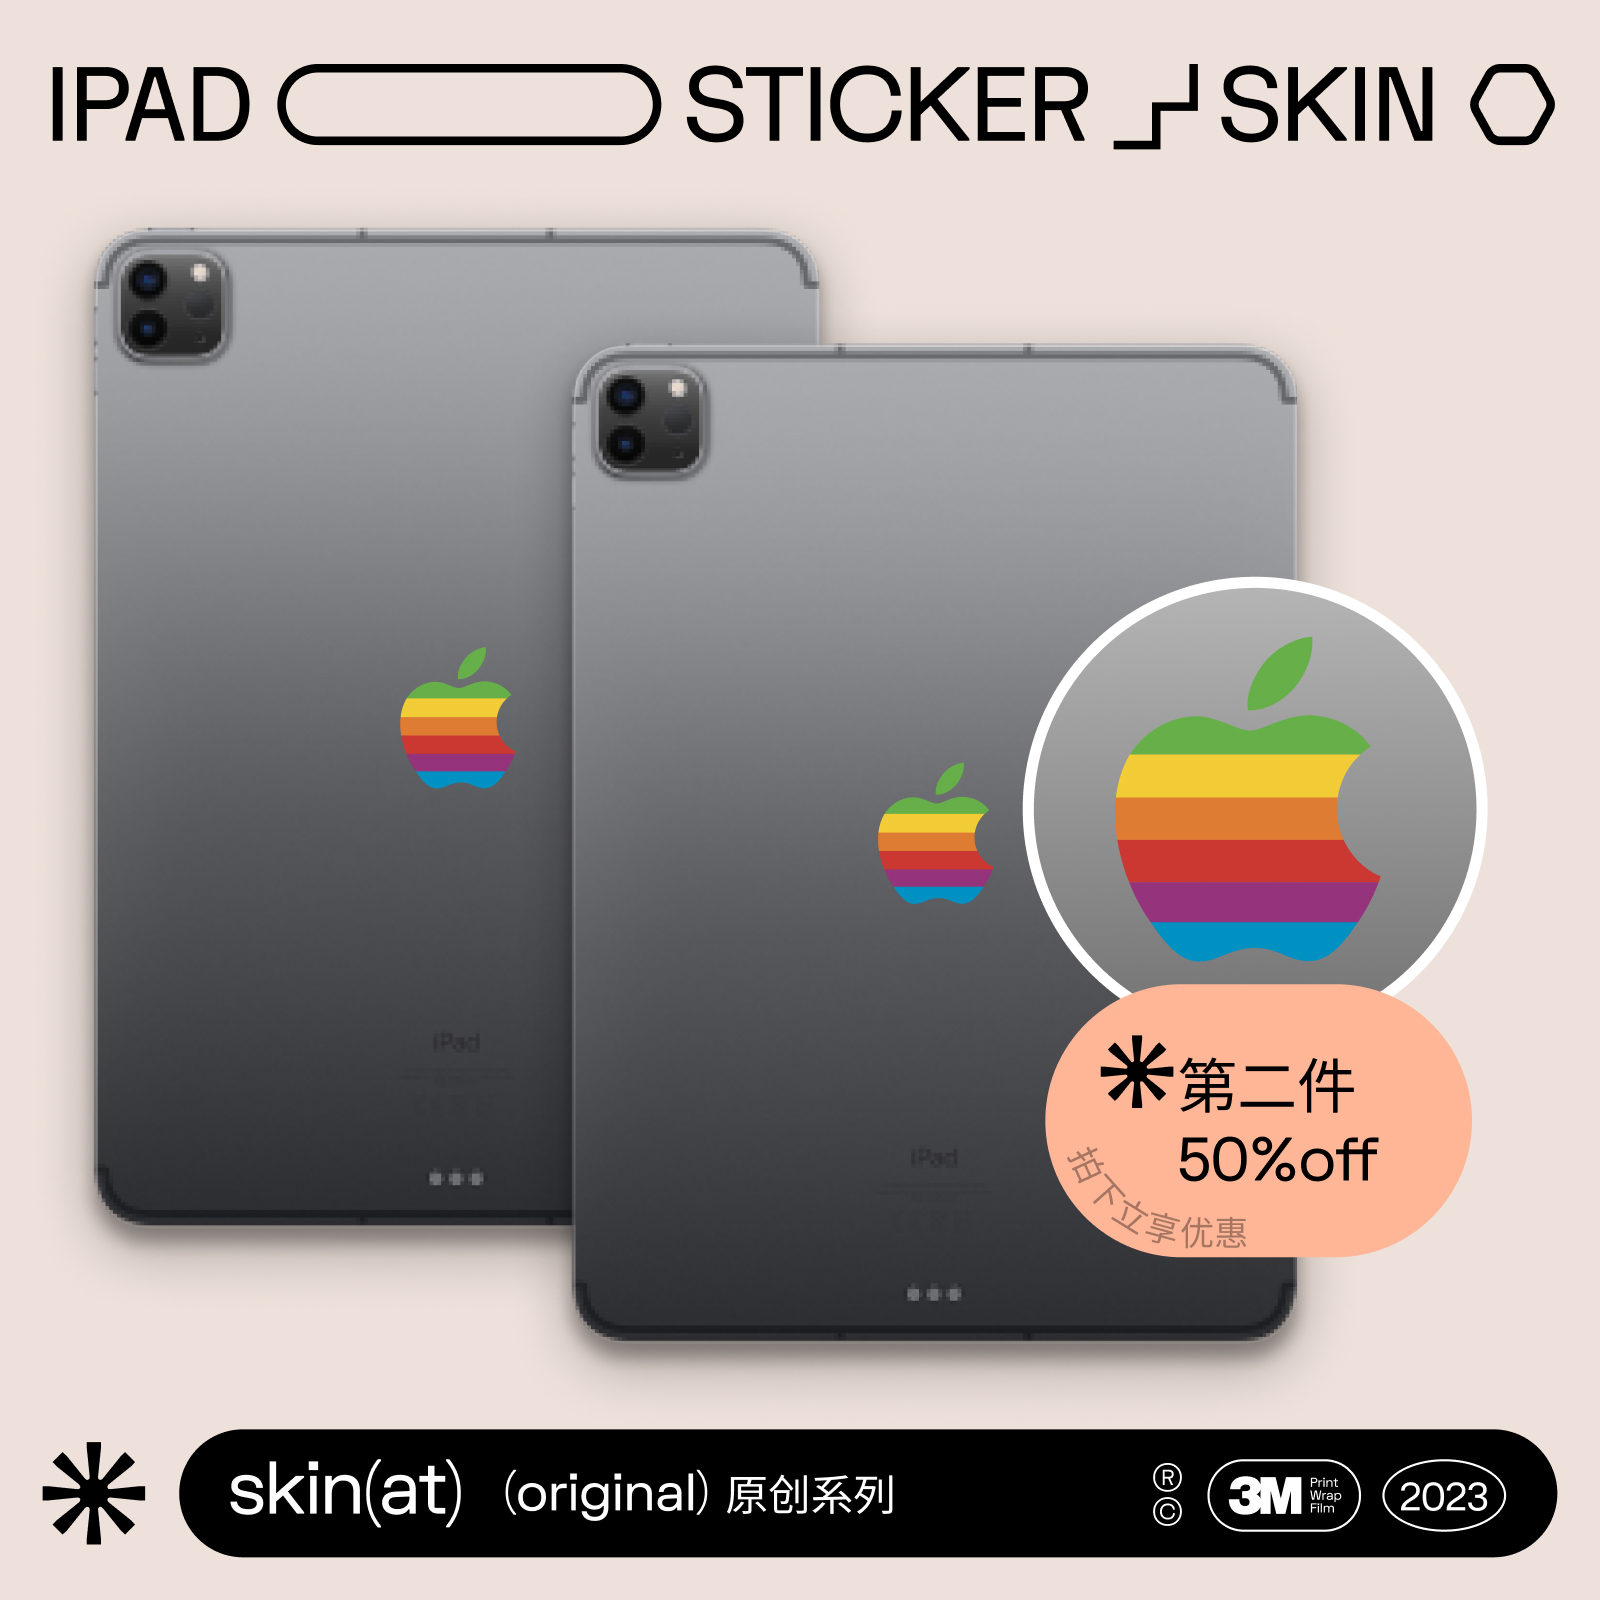 SkinAT 适用于iPad Air创意贴iPad Pro 11/12.9贴炫彩贴Mini5经典logo个性贴 苹果平板ipad创意logo贴纸